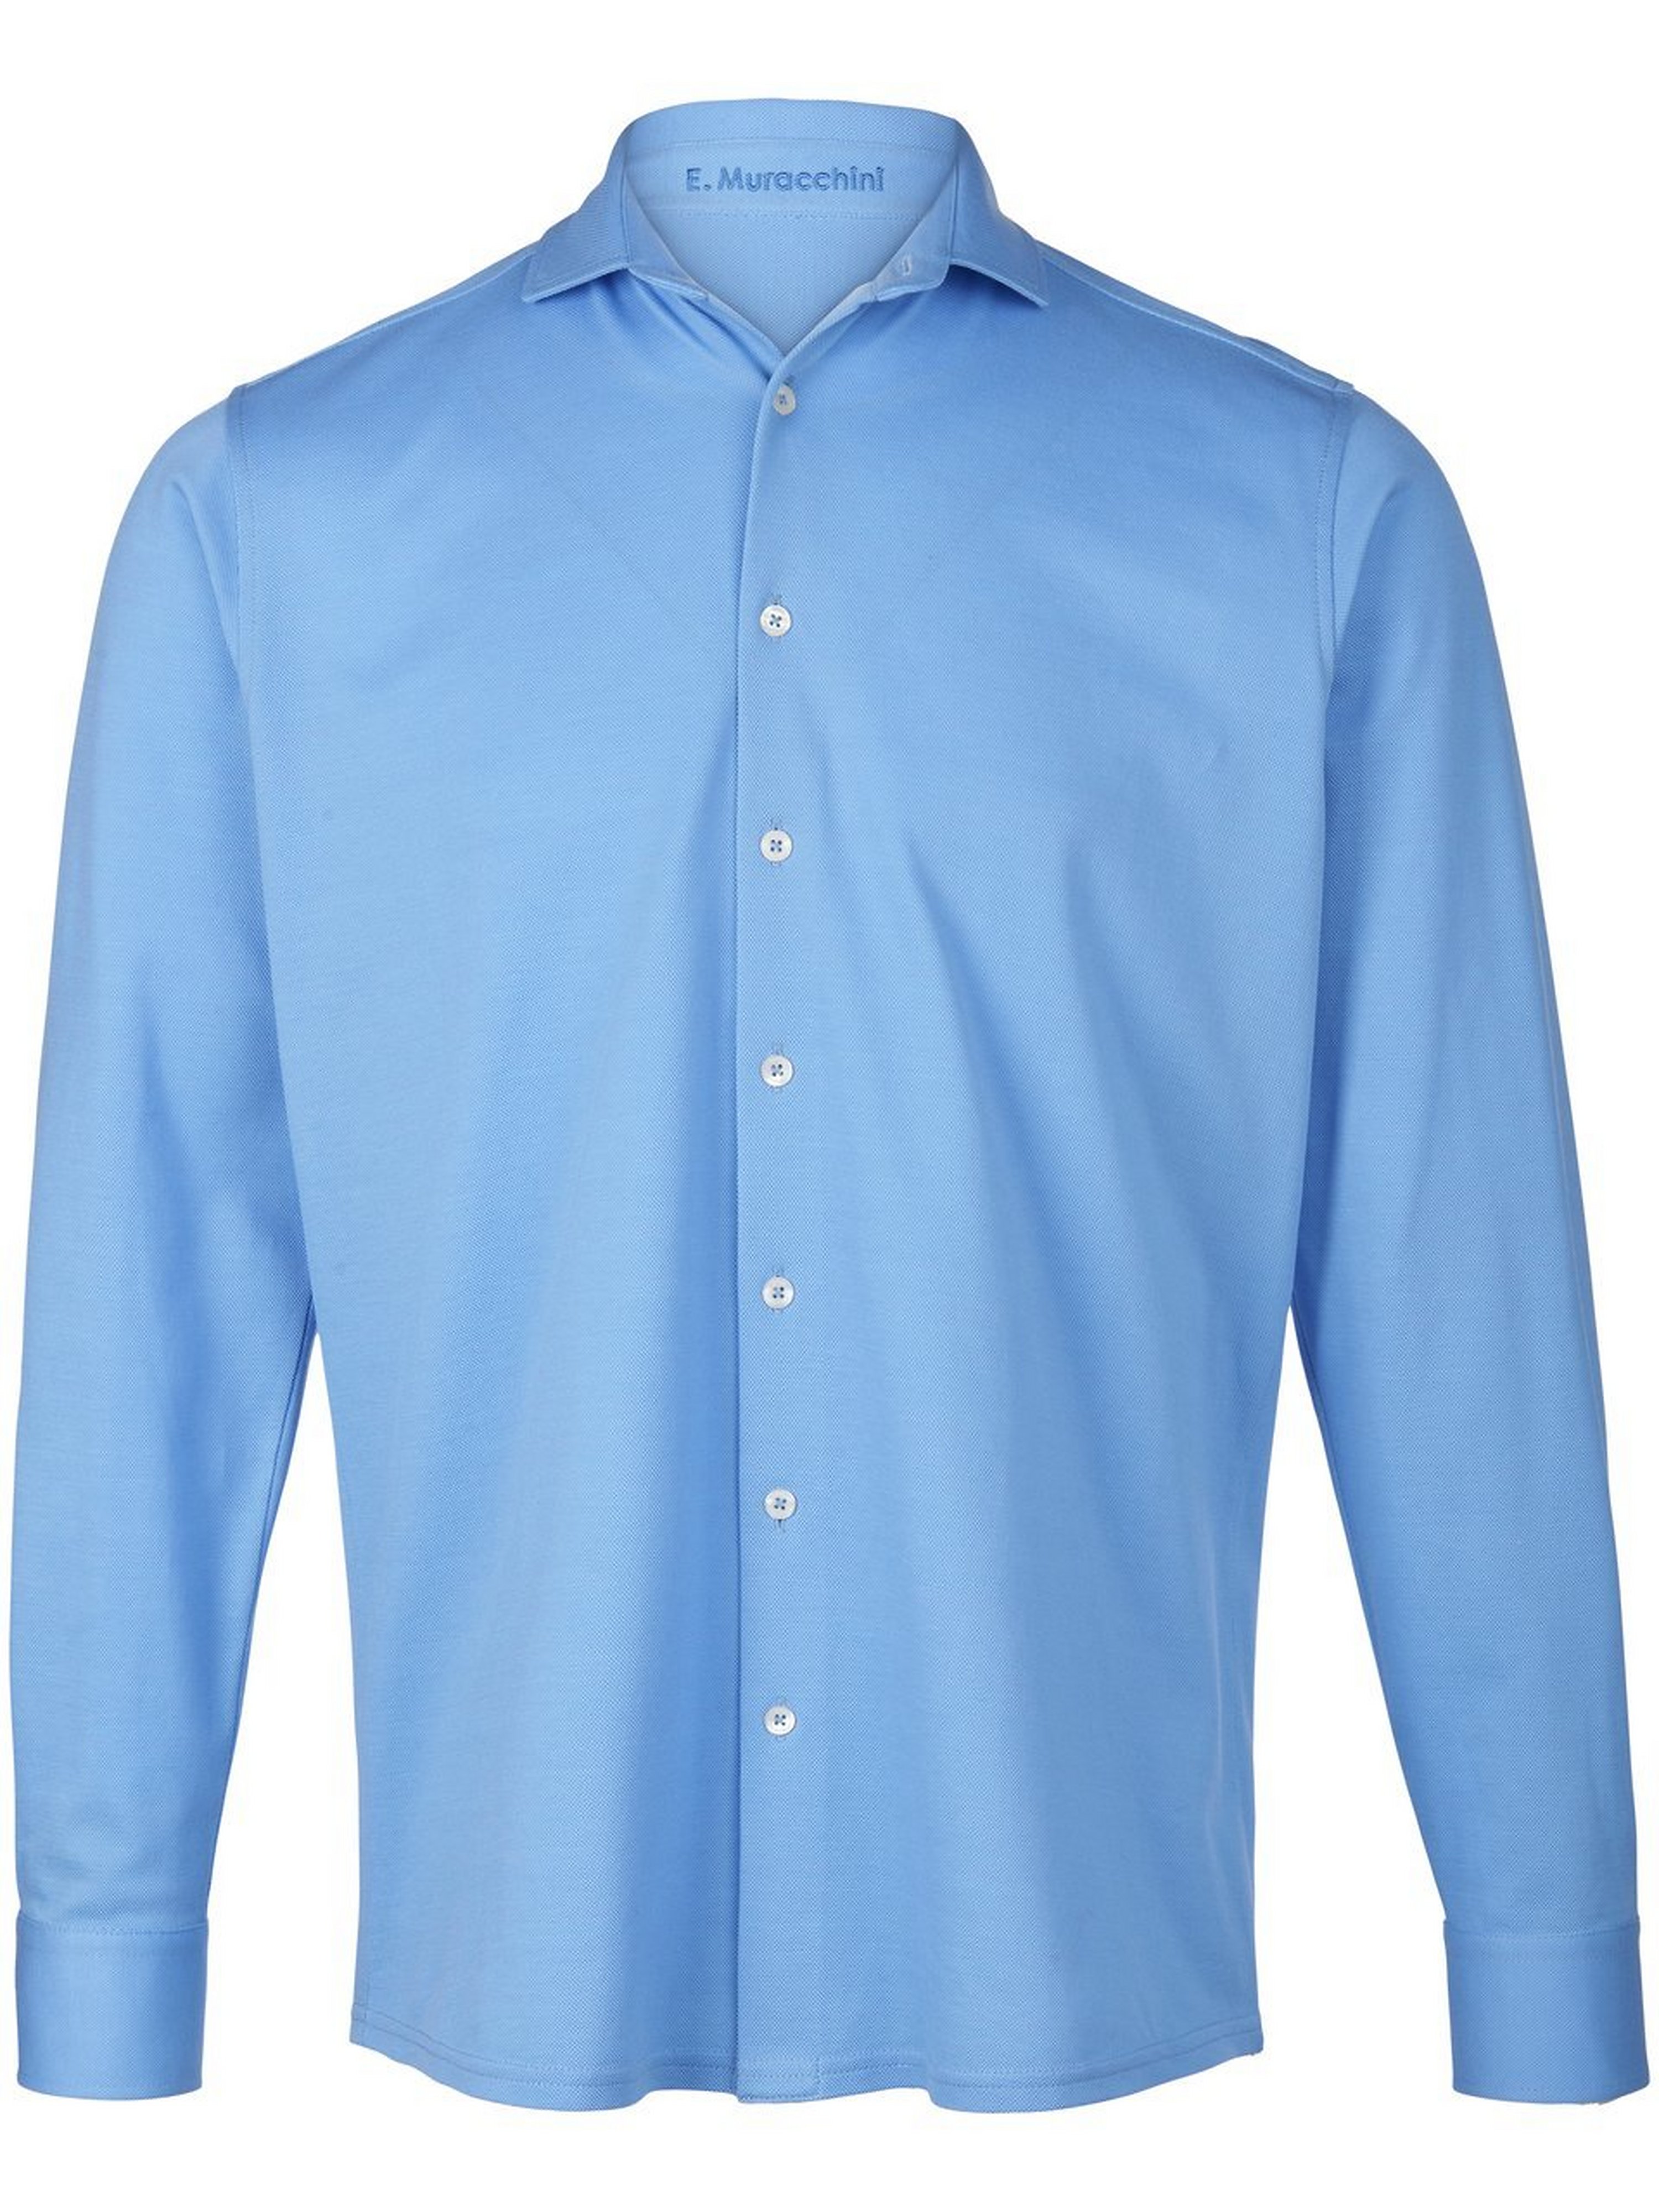 Jersey overhemd 100% katoen Van E.Muracchini blauw